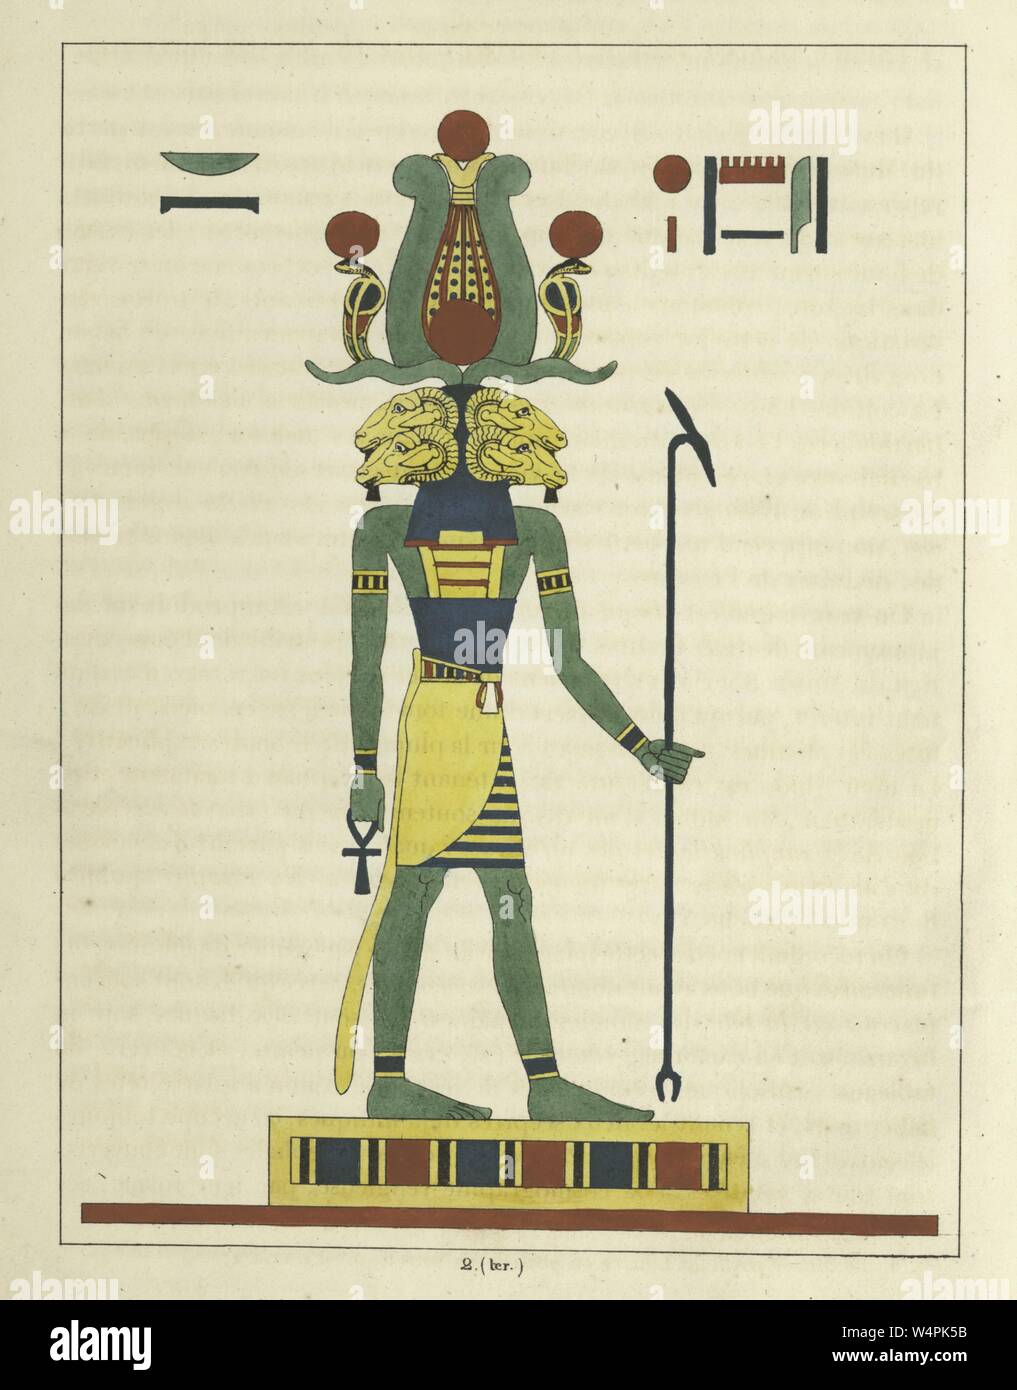 Le dieu Amon (Amun-Ra), tenant l'ankh et le sceptre, le champion des pauvres et troublée, illustration du livre 'panthéon égyptien' par Léon Jean Joseph Dubois, 1824. À partir de la Bibliothèque publique de New York. () Banque D'Images